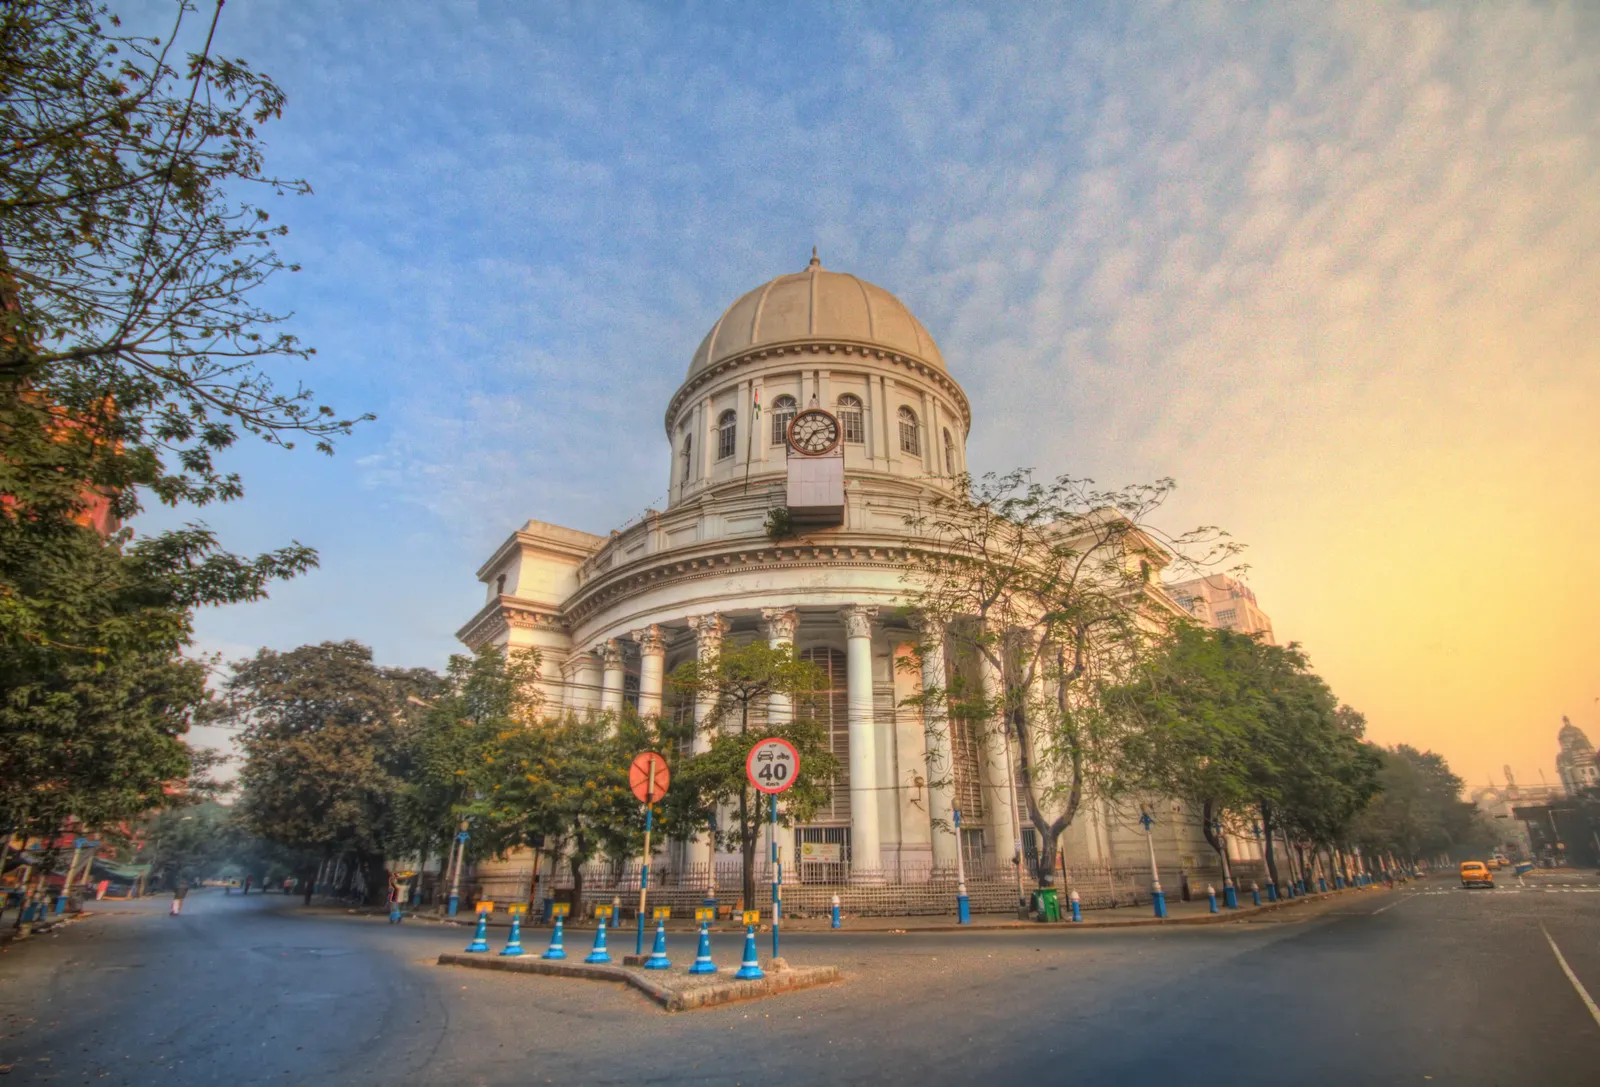 Kolkata, Ấn Độ Là bưu điện trung tâm của Kolkata và bưu điện chính của Tây Bengal, Tổng cục Bưu điện Kolkata chịu trách nhiệm về hầu hết các thư đến và đi khỏi thành phố. Tòa nhà tân cổ điển có từ năm 1864 và được thiết kế bởi Walter B. Grenville, người từng là kiến ​​trúc sư tư vấn cho chính phủ Ấn Độ.